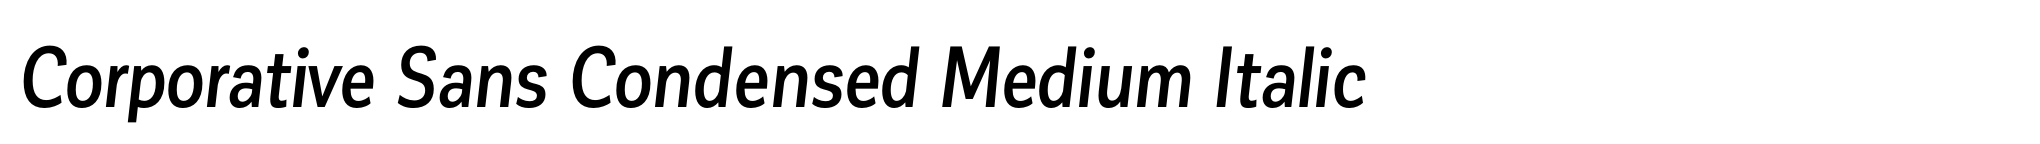 Corporative Sans Condensed Medium Italic image